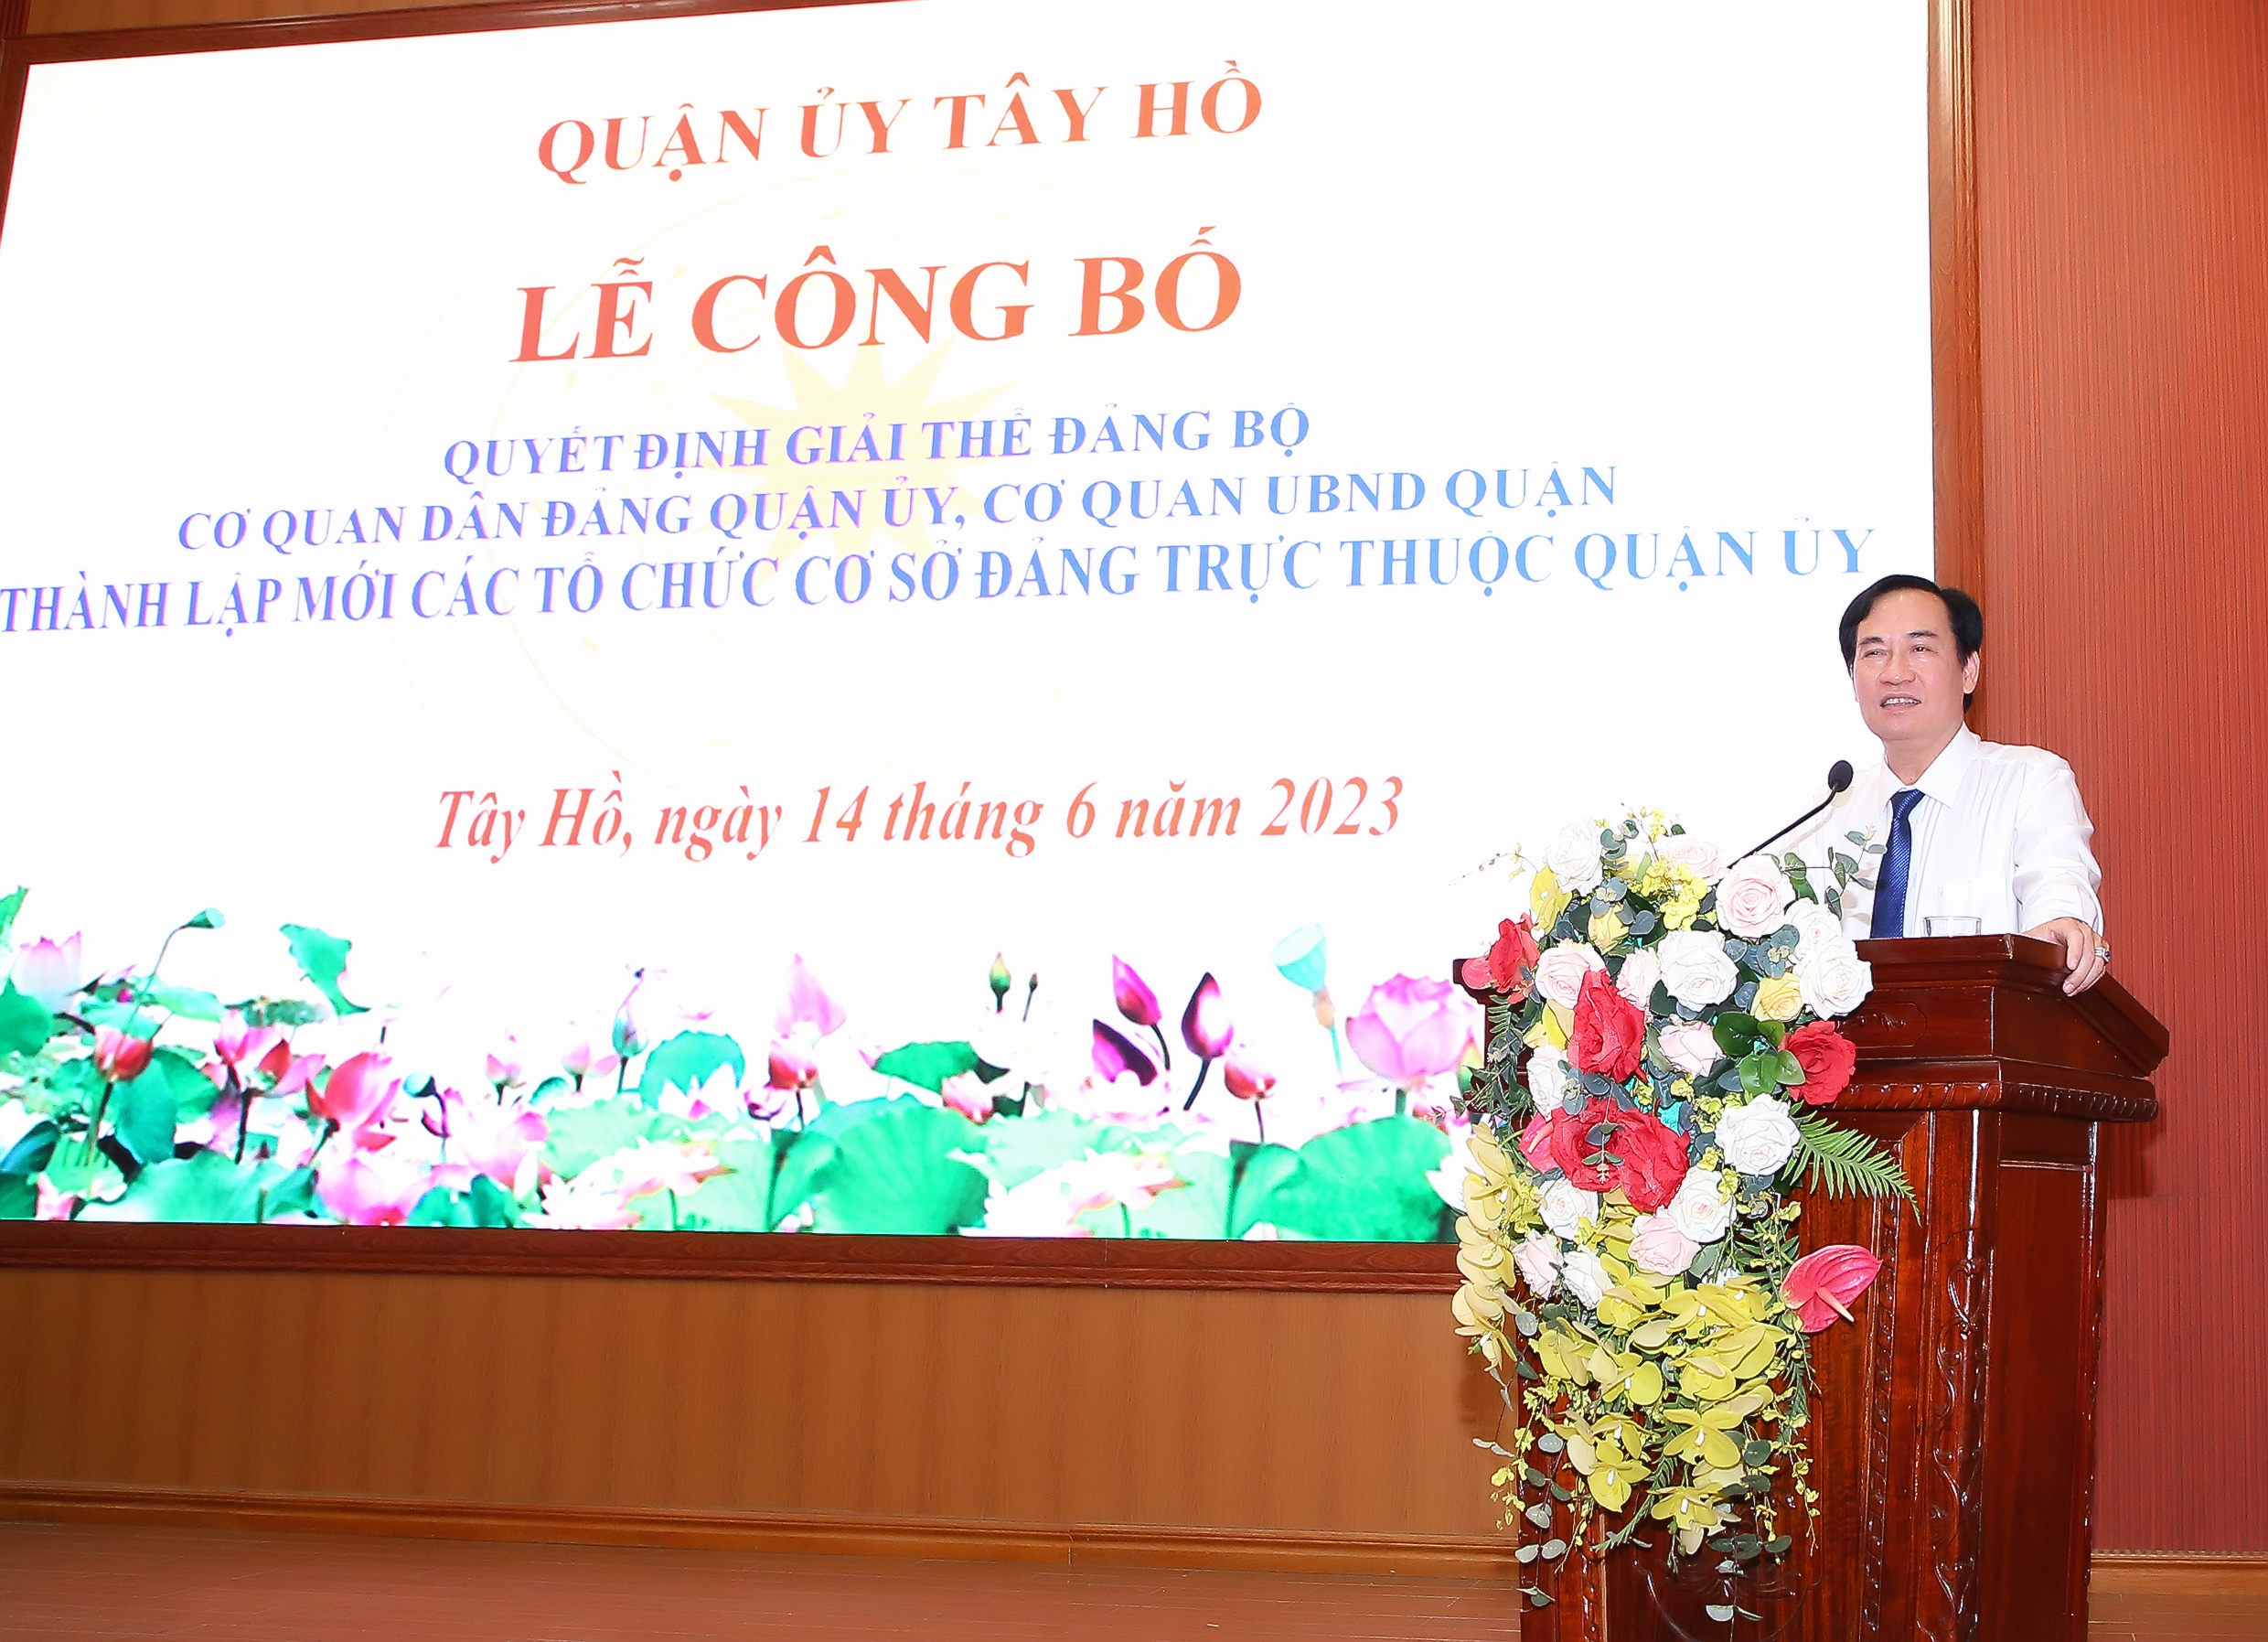 Phó Bí thư Thường trực Quận ủy Tây Hồ Nguyễn Anh Tuấn phát biểu chỉ đạo tại buổi lễ.